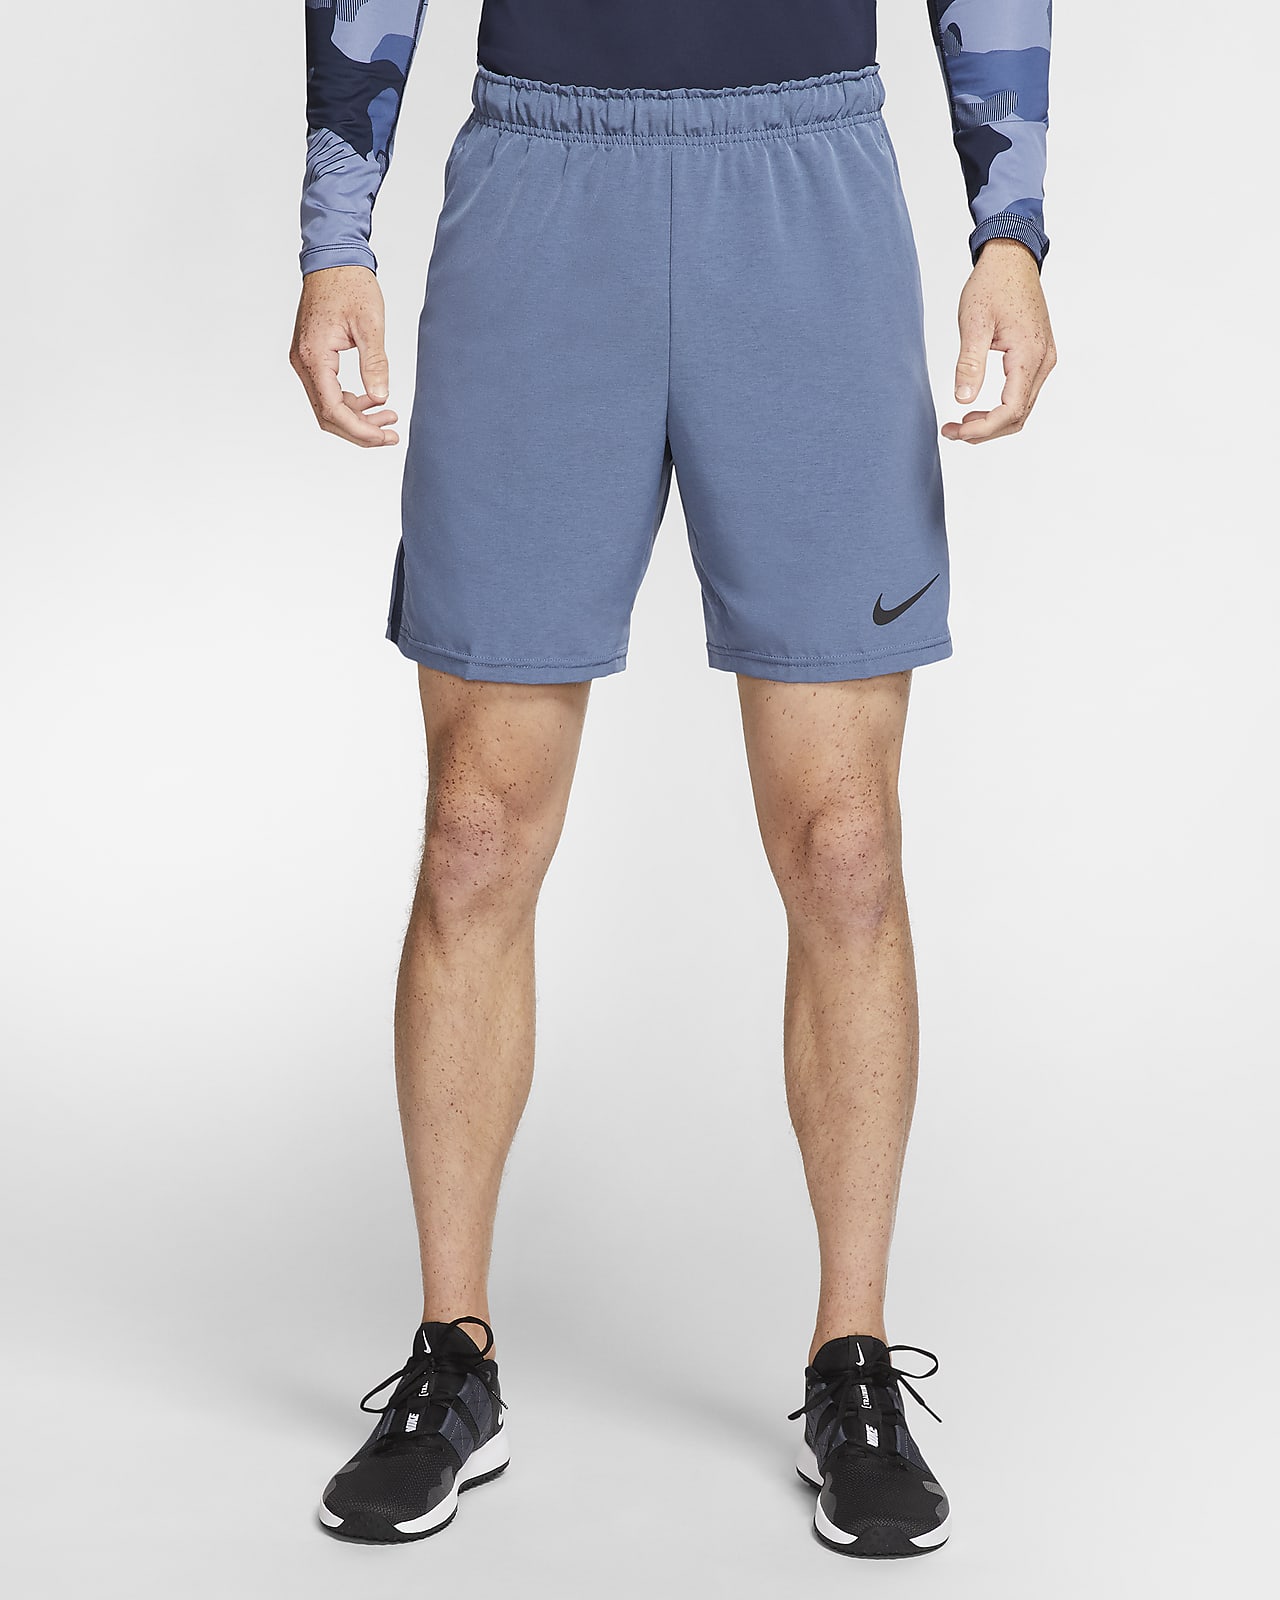 Nike Flex Men's Training Shorts. Nike.com